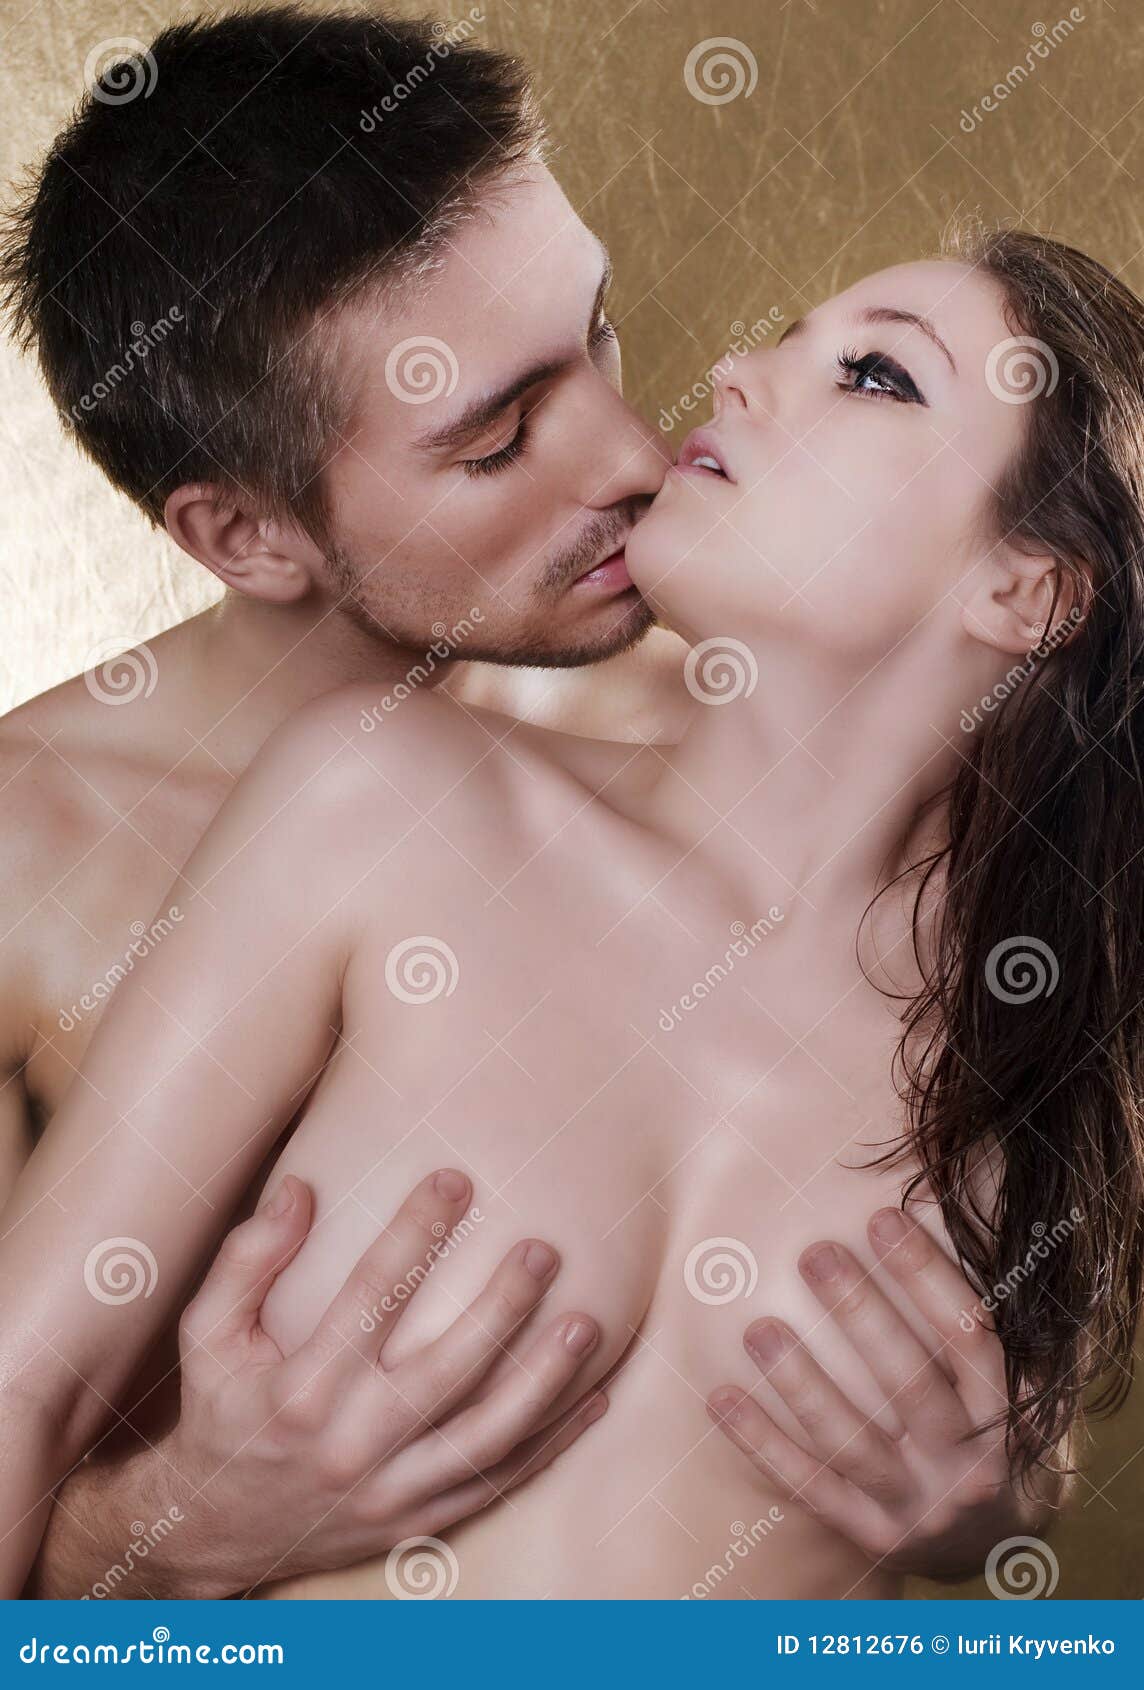 Naked kissing pics